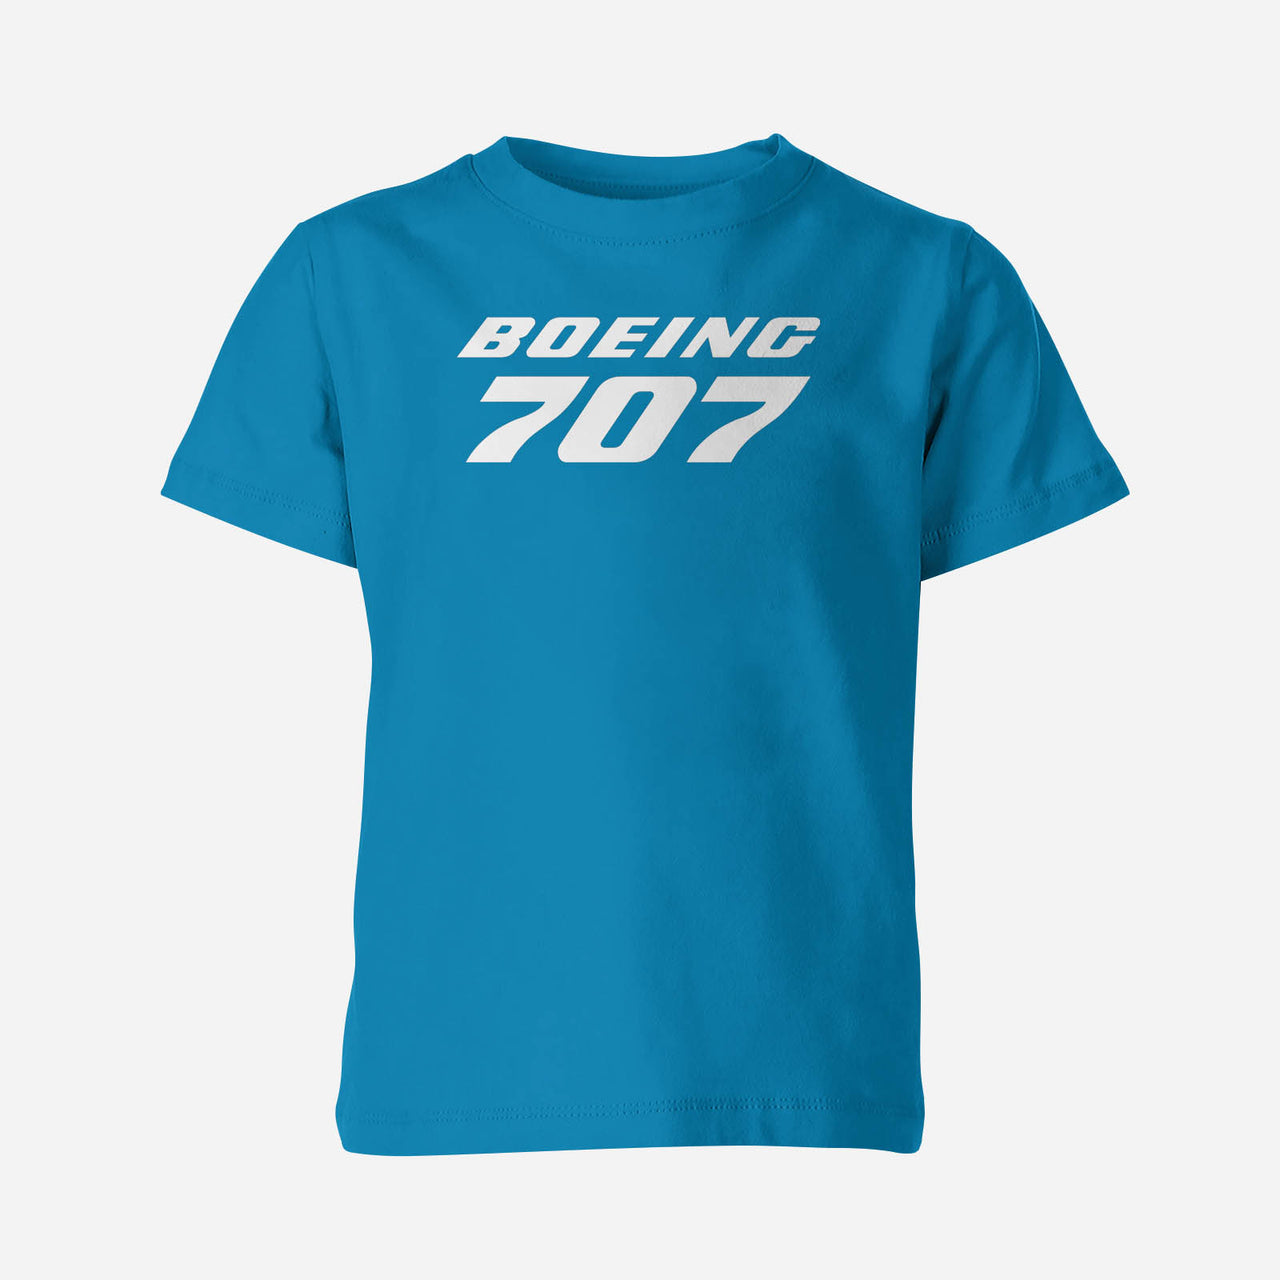 Boeing 707 & Text Designed Children T-Shirts